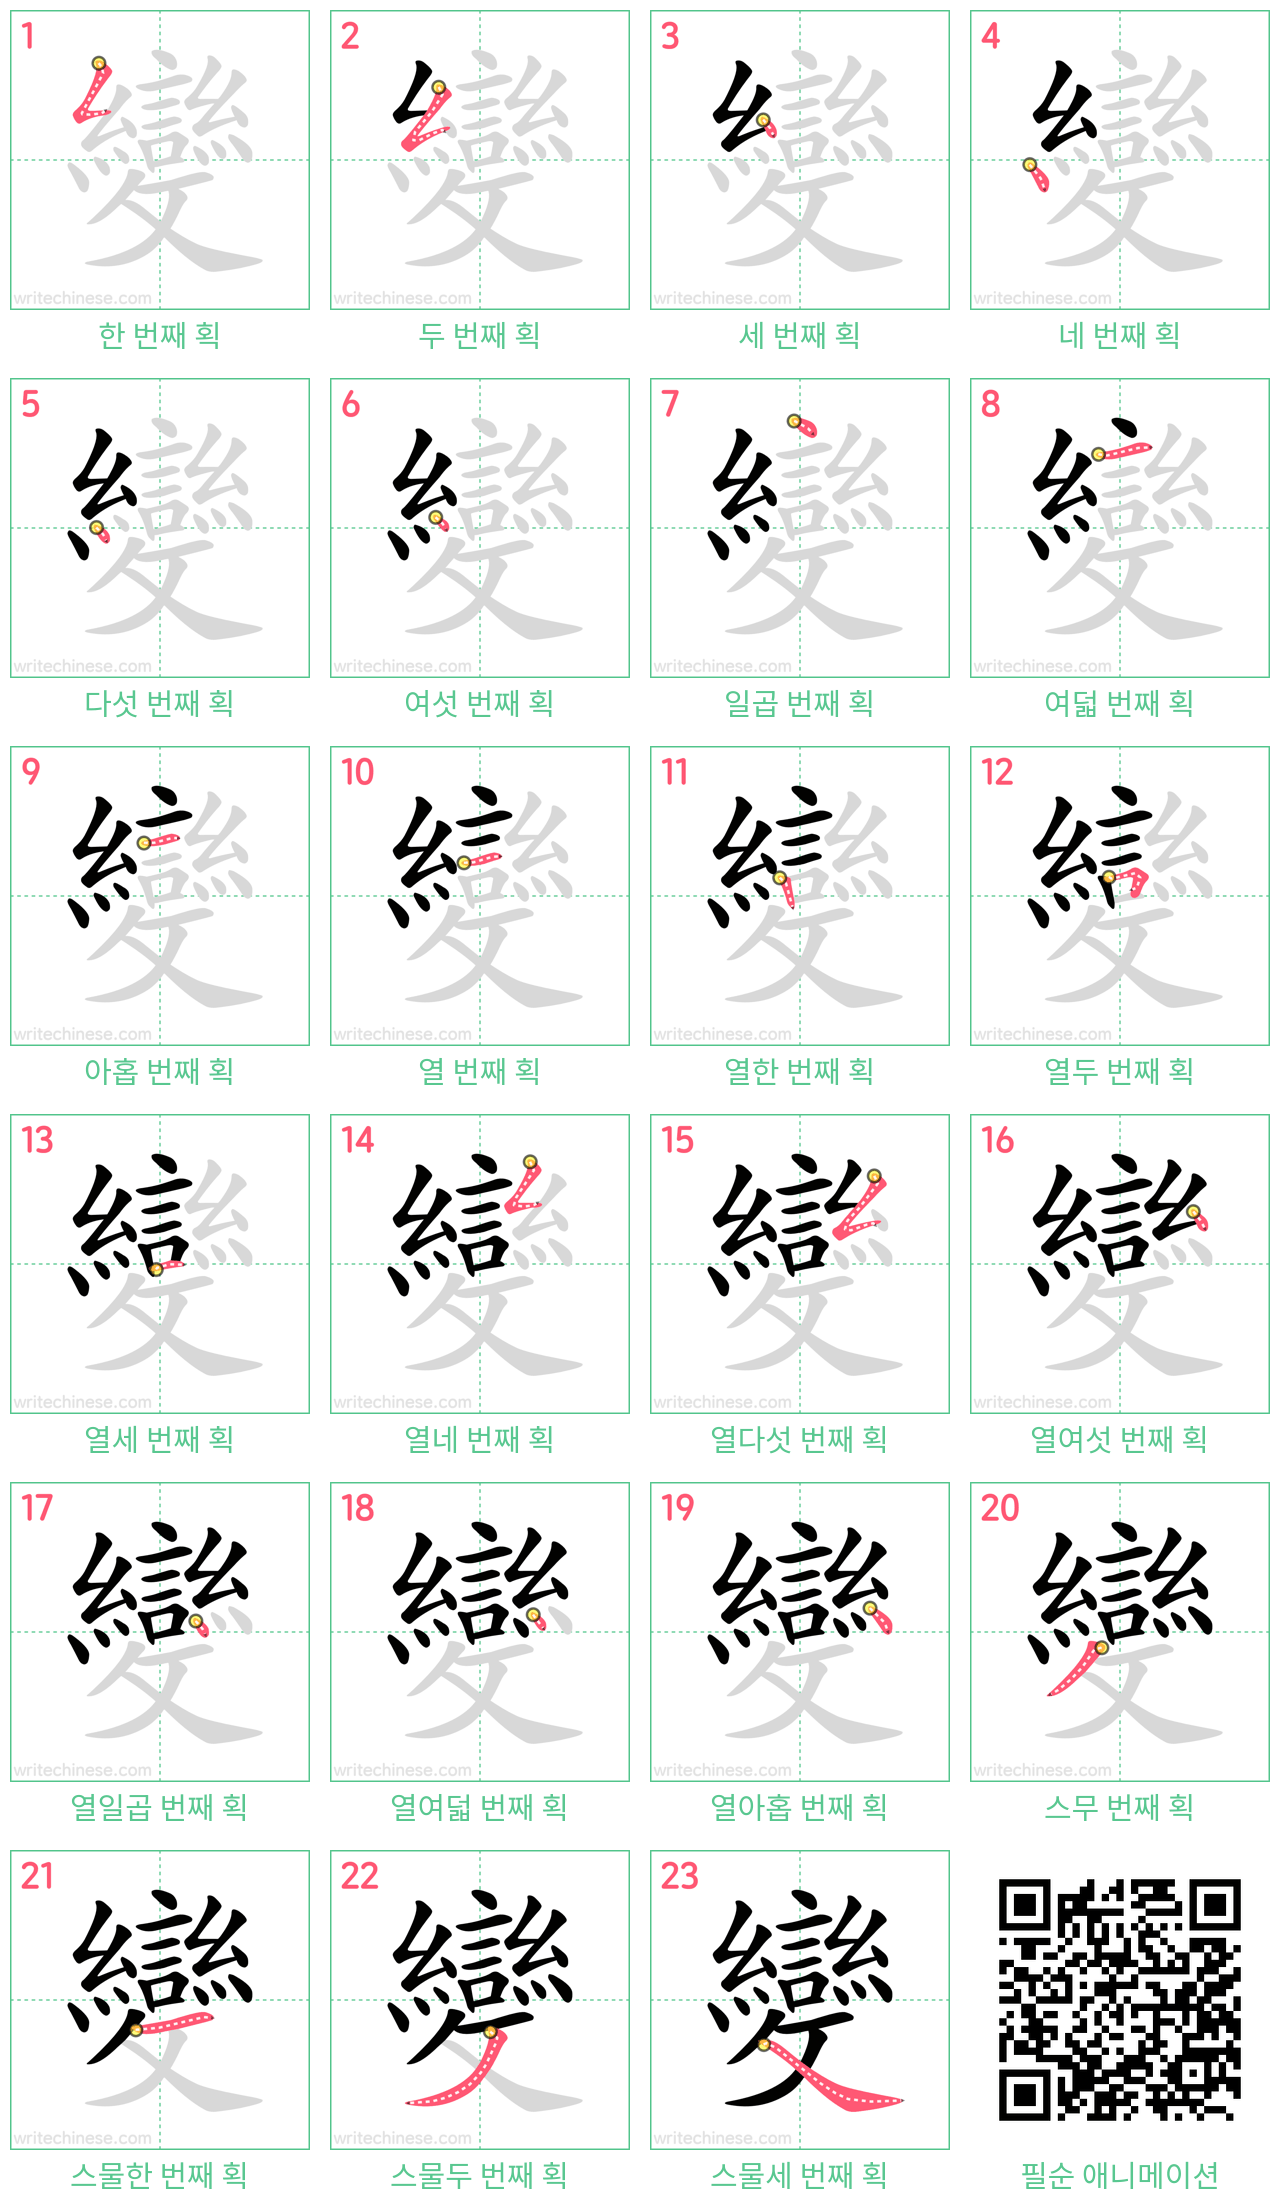 變 step-by-step stroke order diagrams